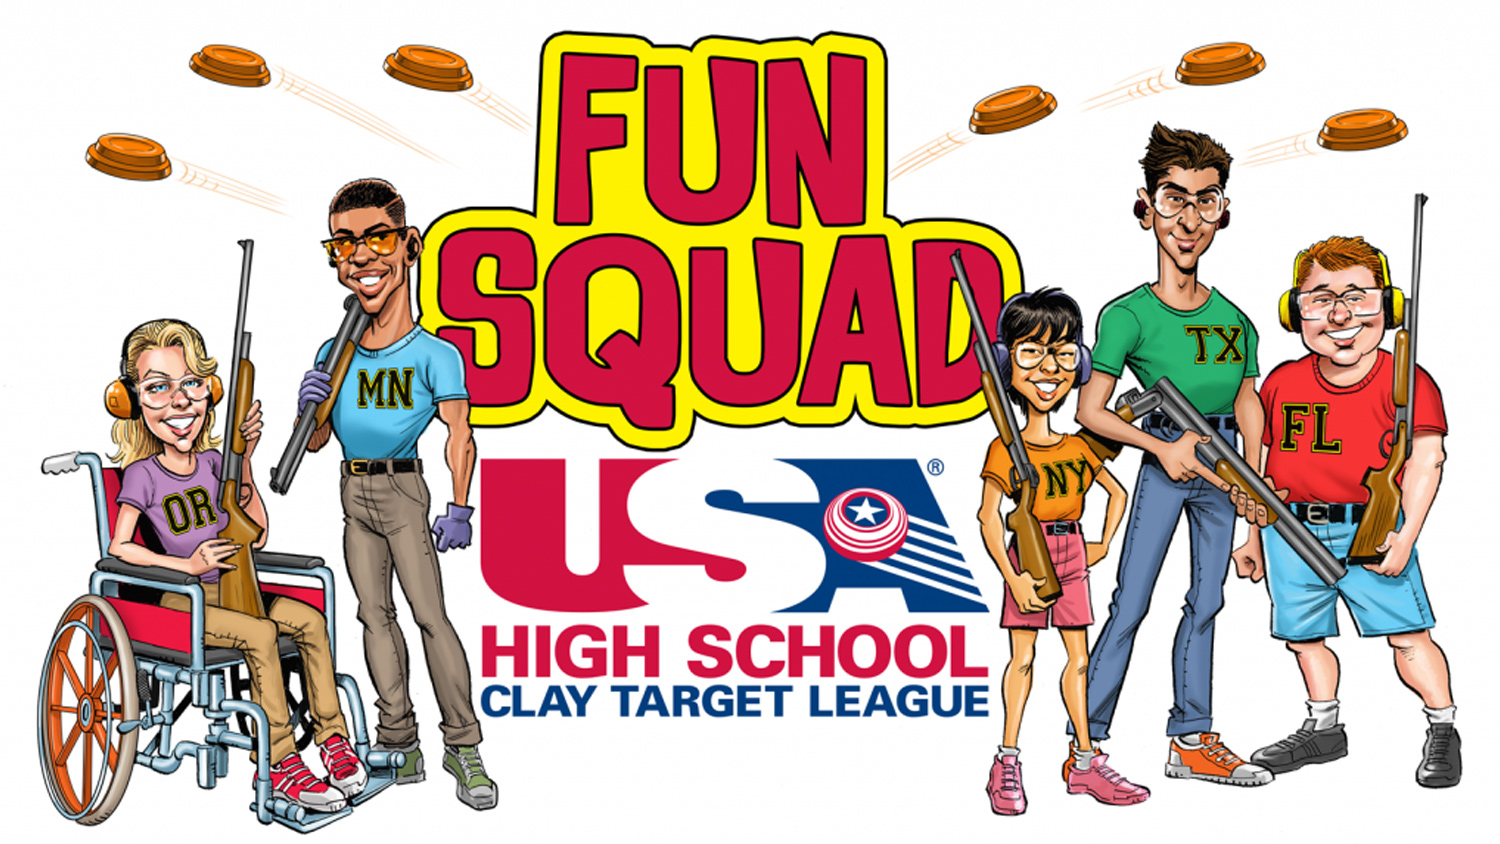 USA High School Clay Target League Fun Squad